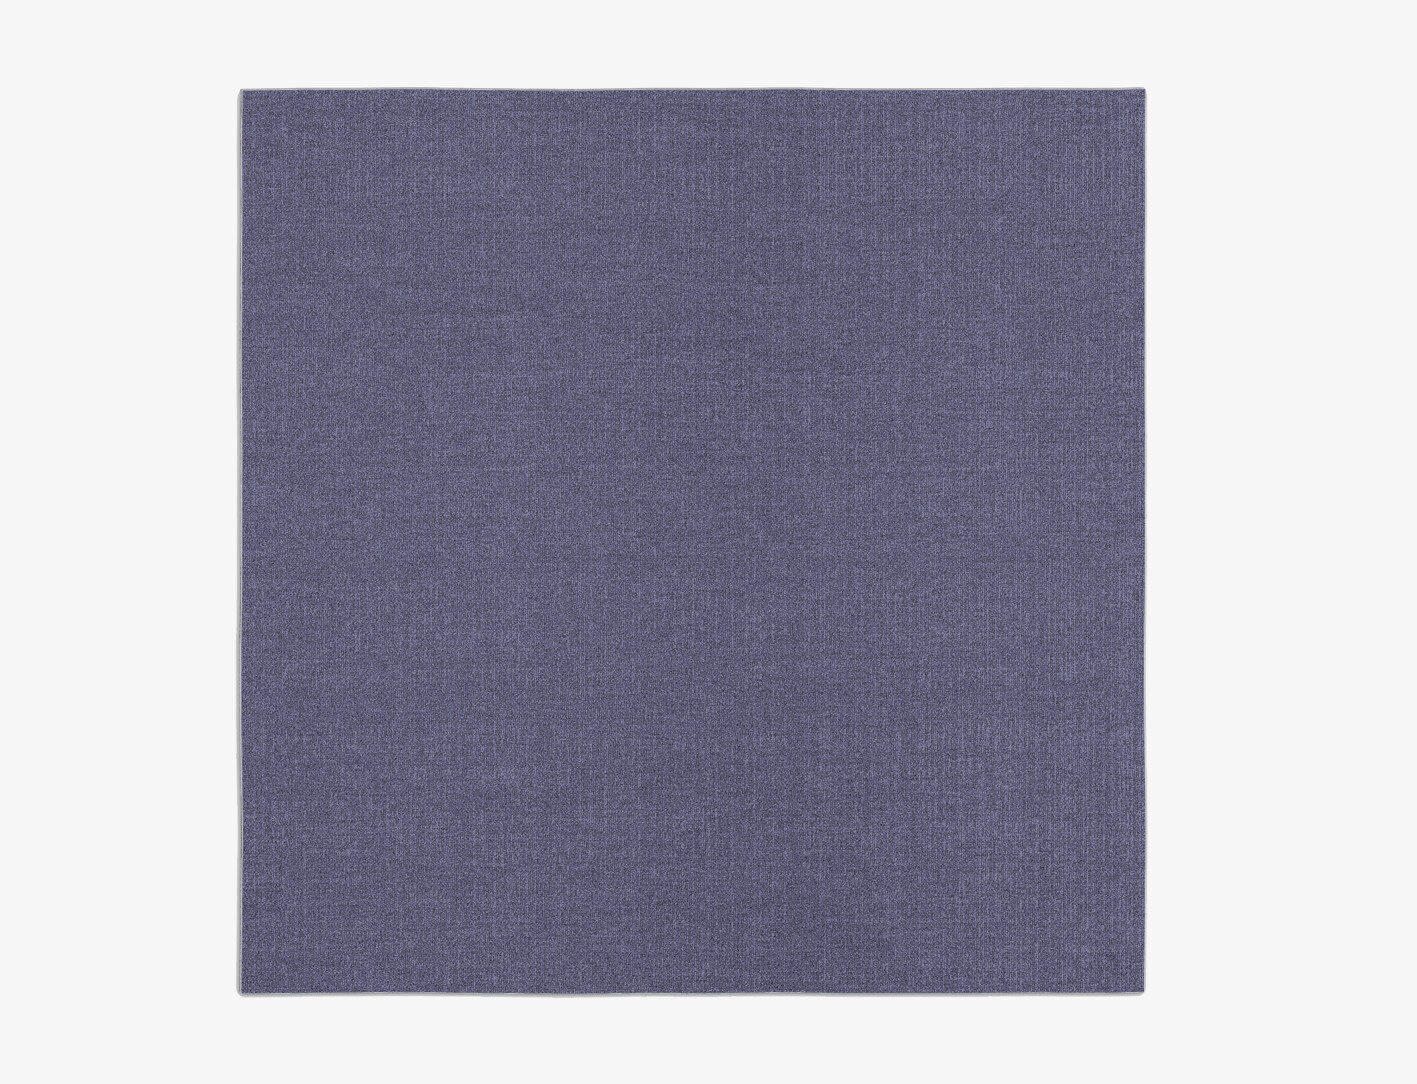 RA-EL04 Solid Colors Square Flatweave New Zealand Wool Custom Rug by Rug Artisan